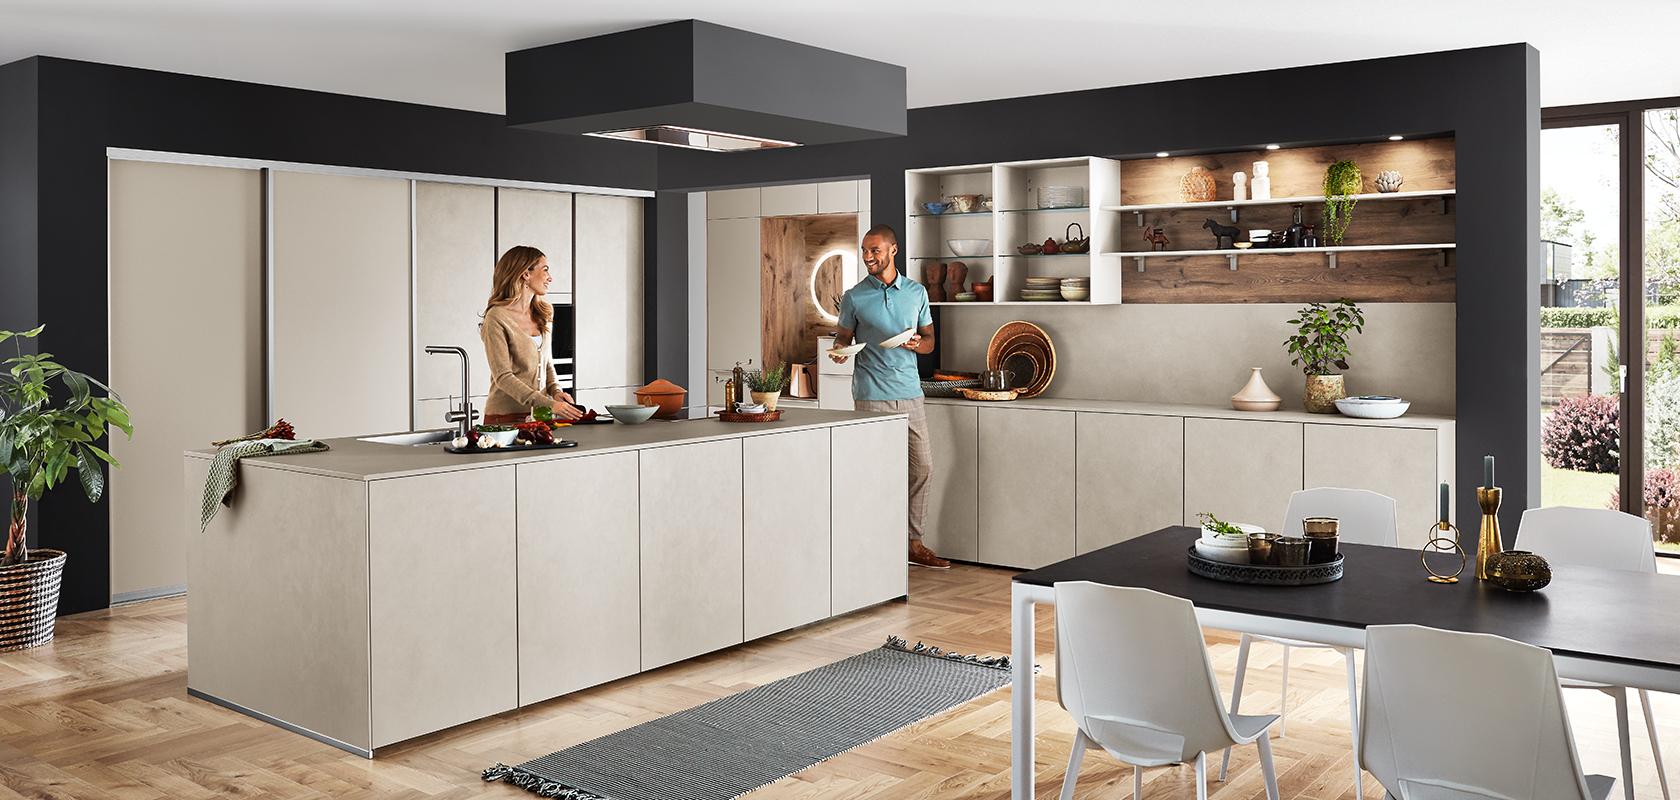 Diseño elegante de cocina moderna con una isla central, estanterías abiertas y electrodomésticos integrados, con una pareja disfrutando de una conversación junto a la encimera.